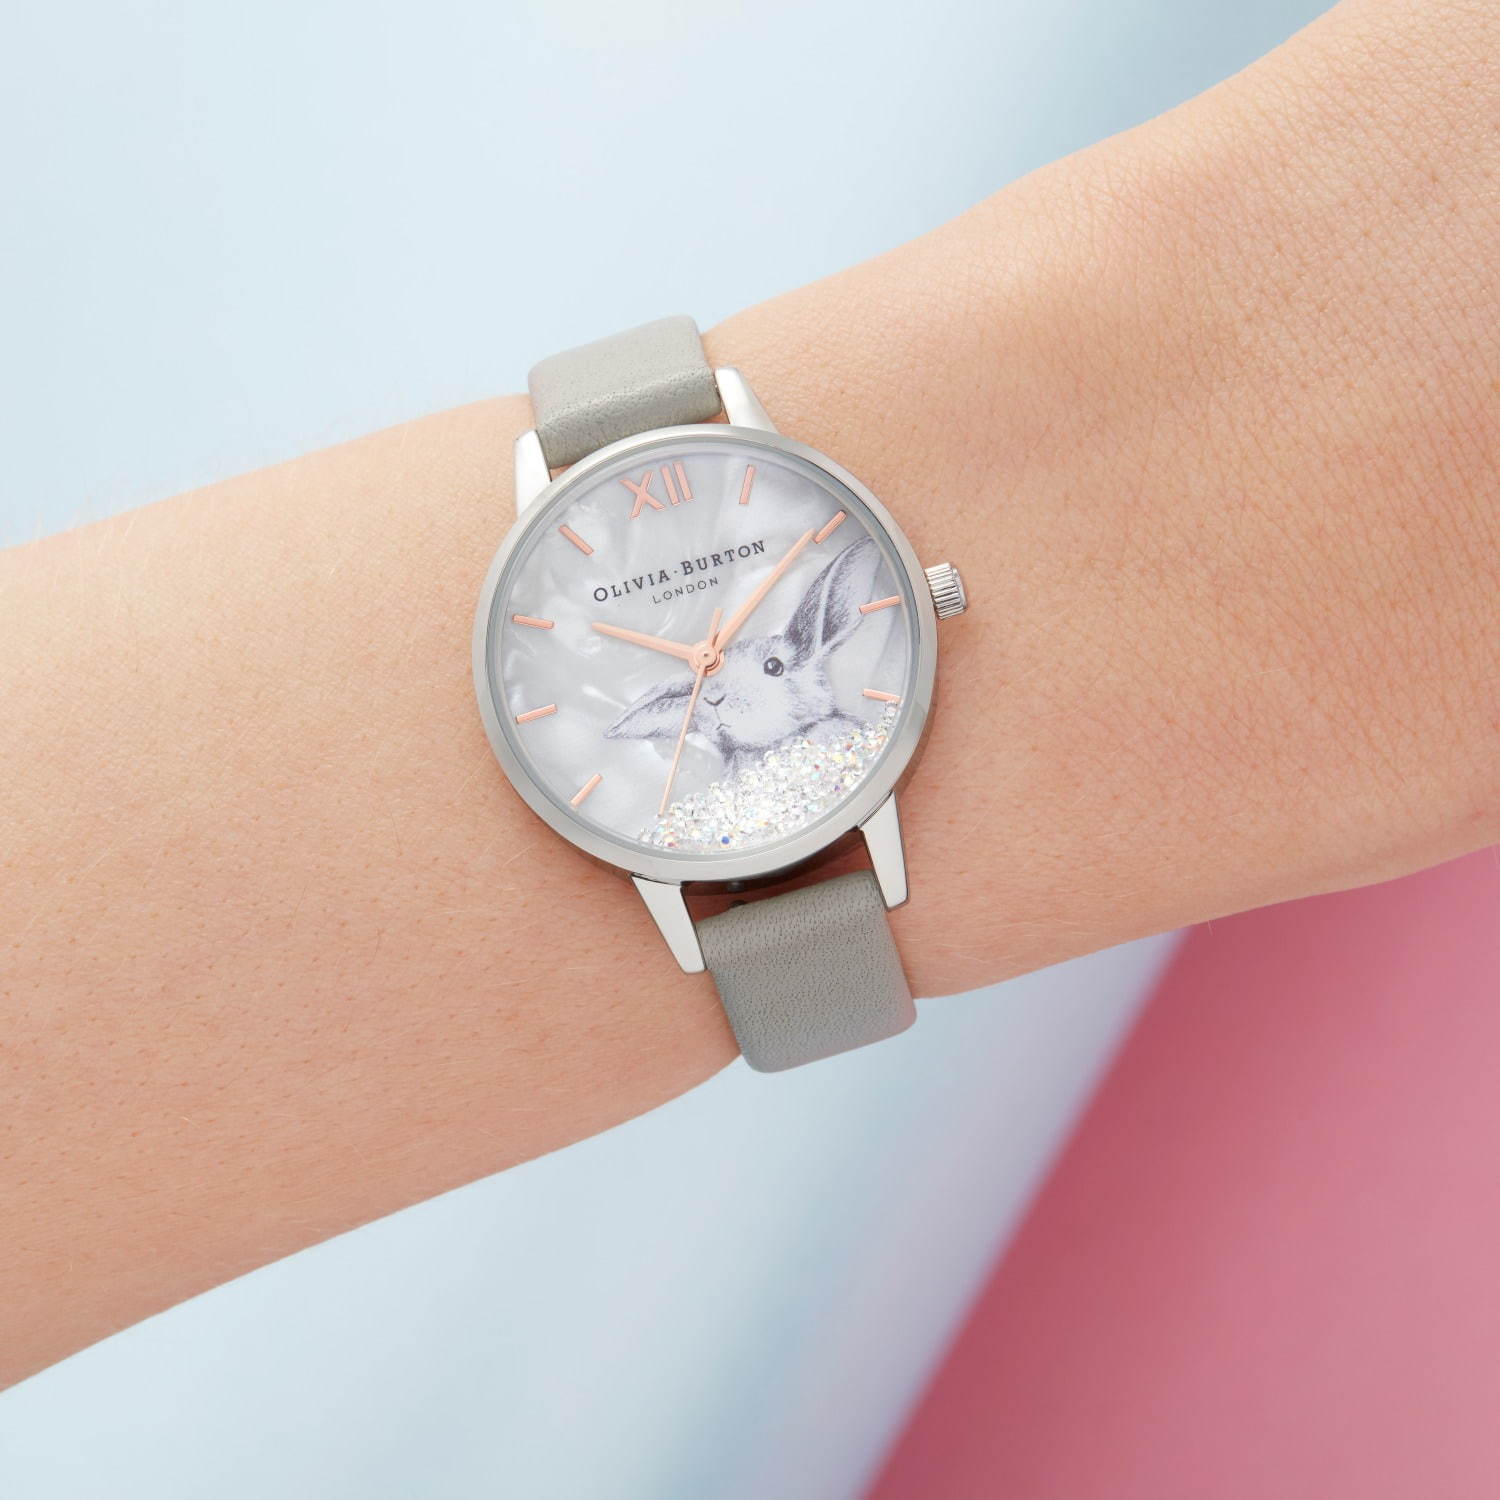 オリビア・バートンの新作腕時計 - 煌めくグリッターや“蜂”モチーフ 